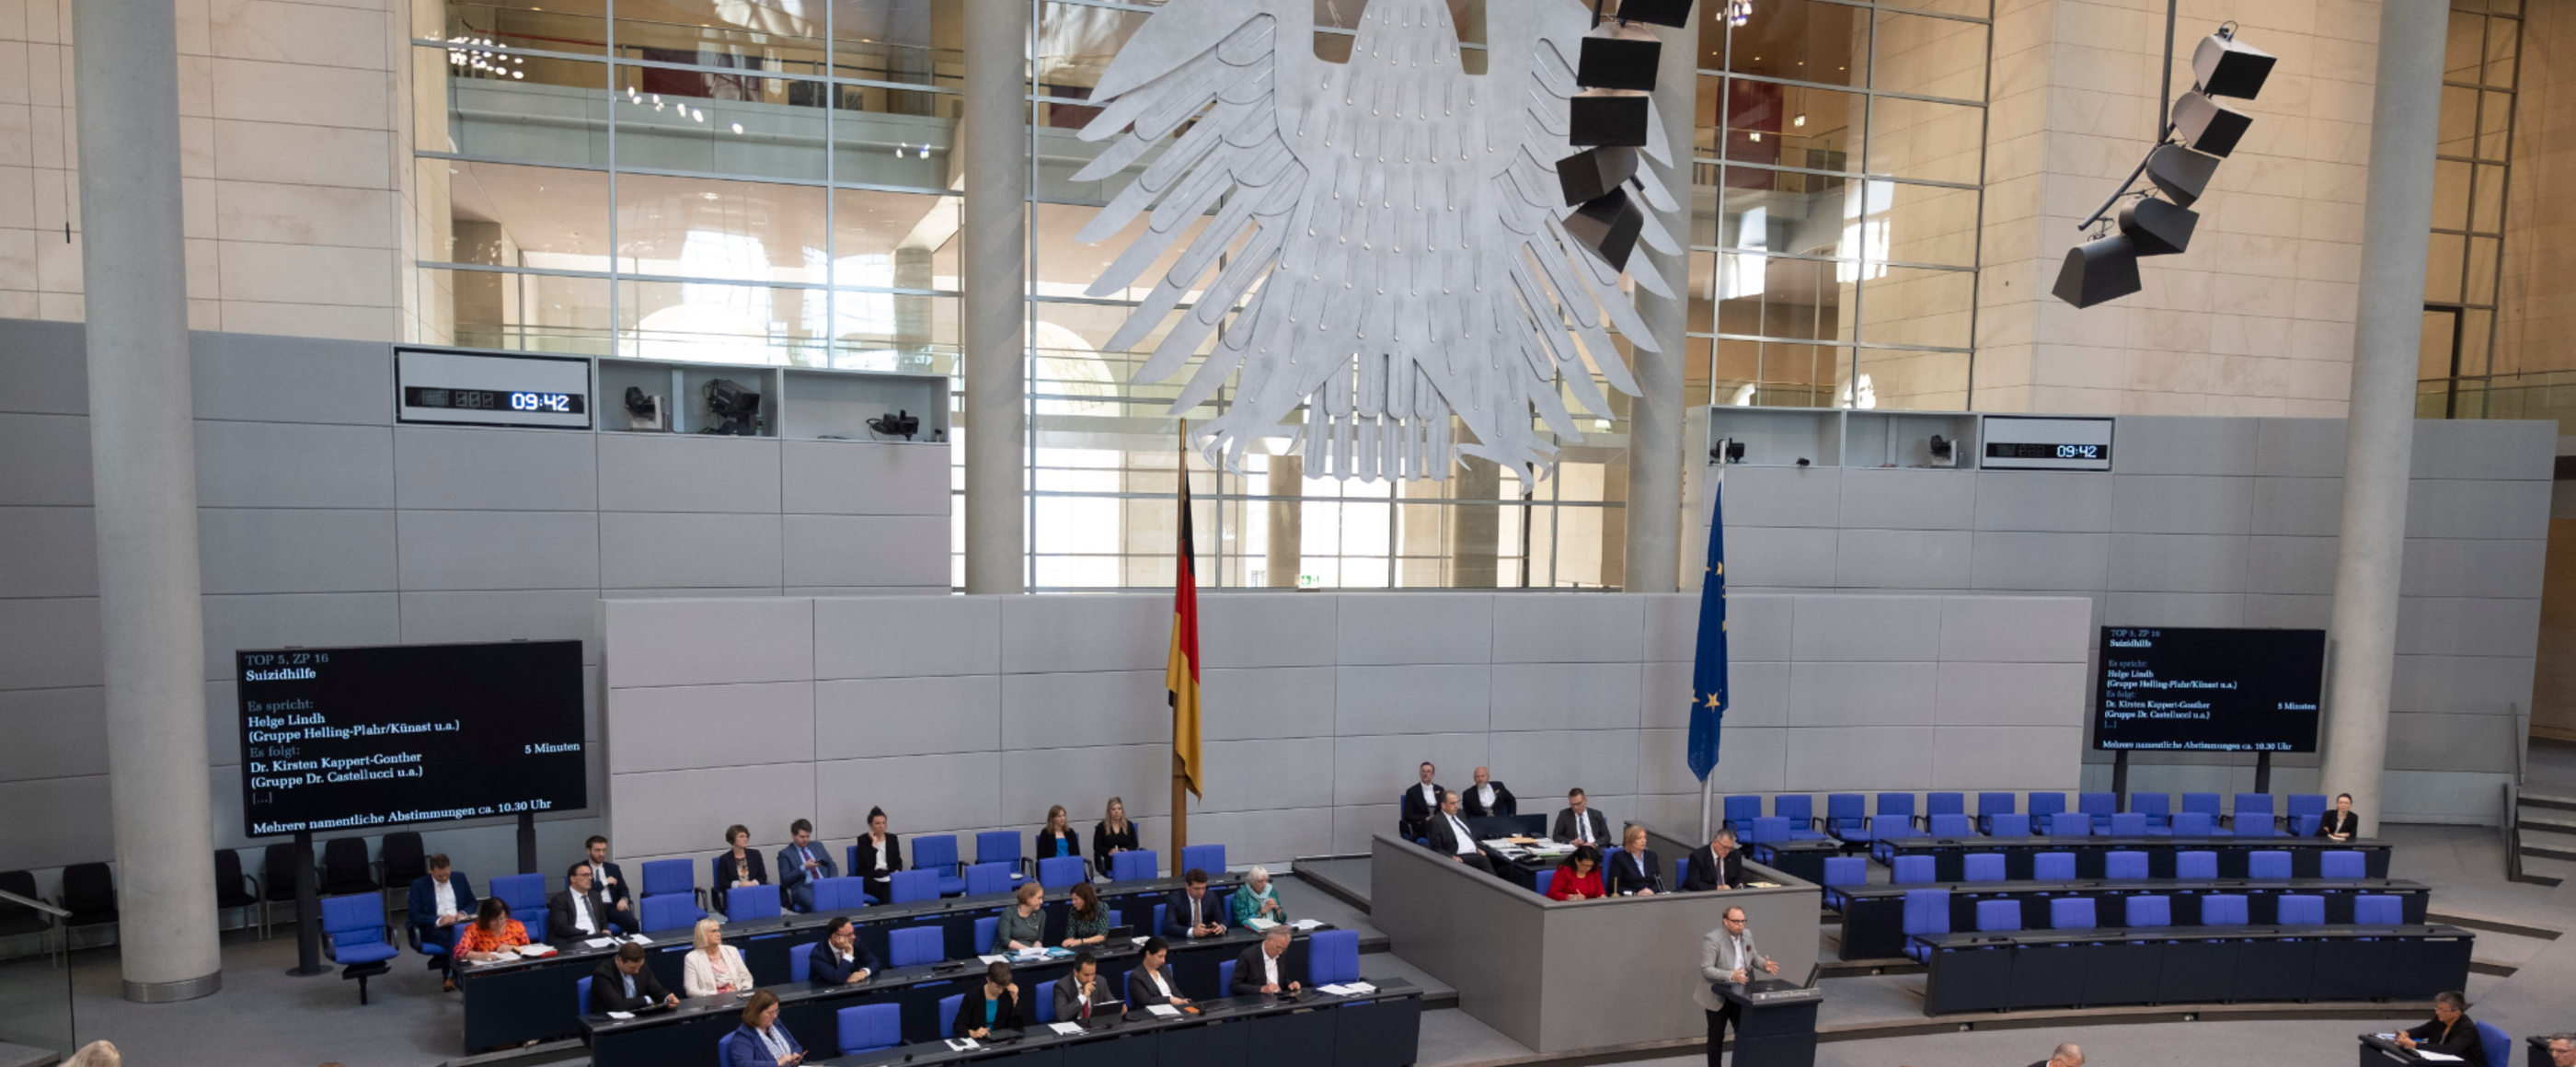 Suizidassistenz Deutscher Bundestag